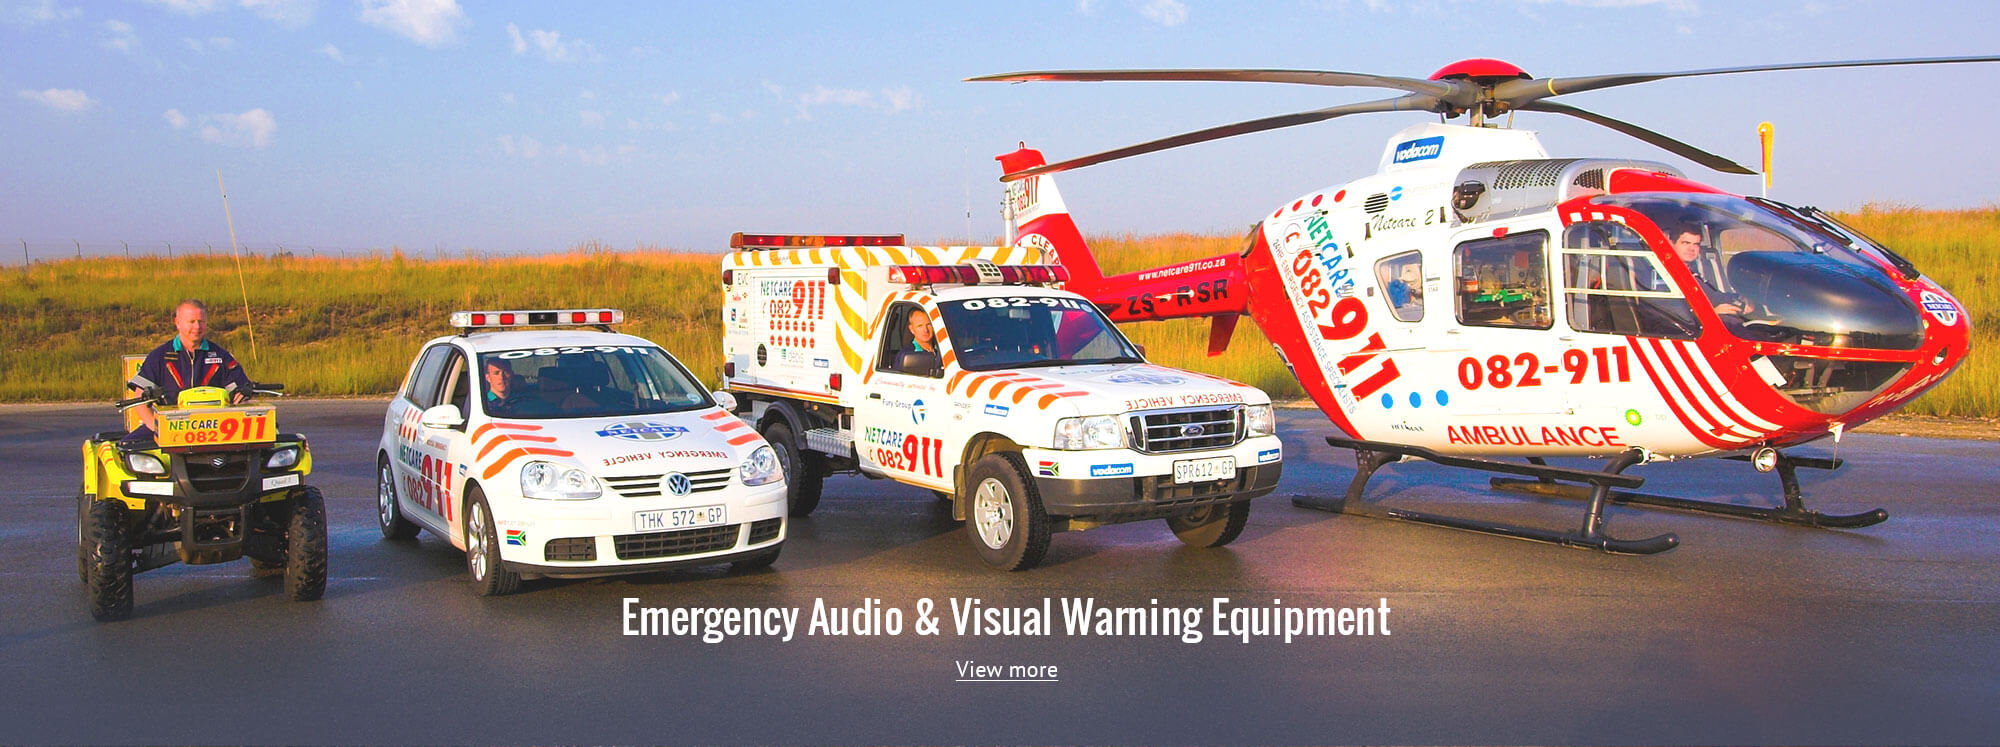 Emergency Audio & Visual Warning Equipment